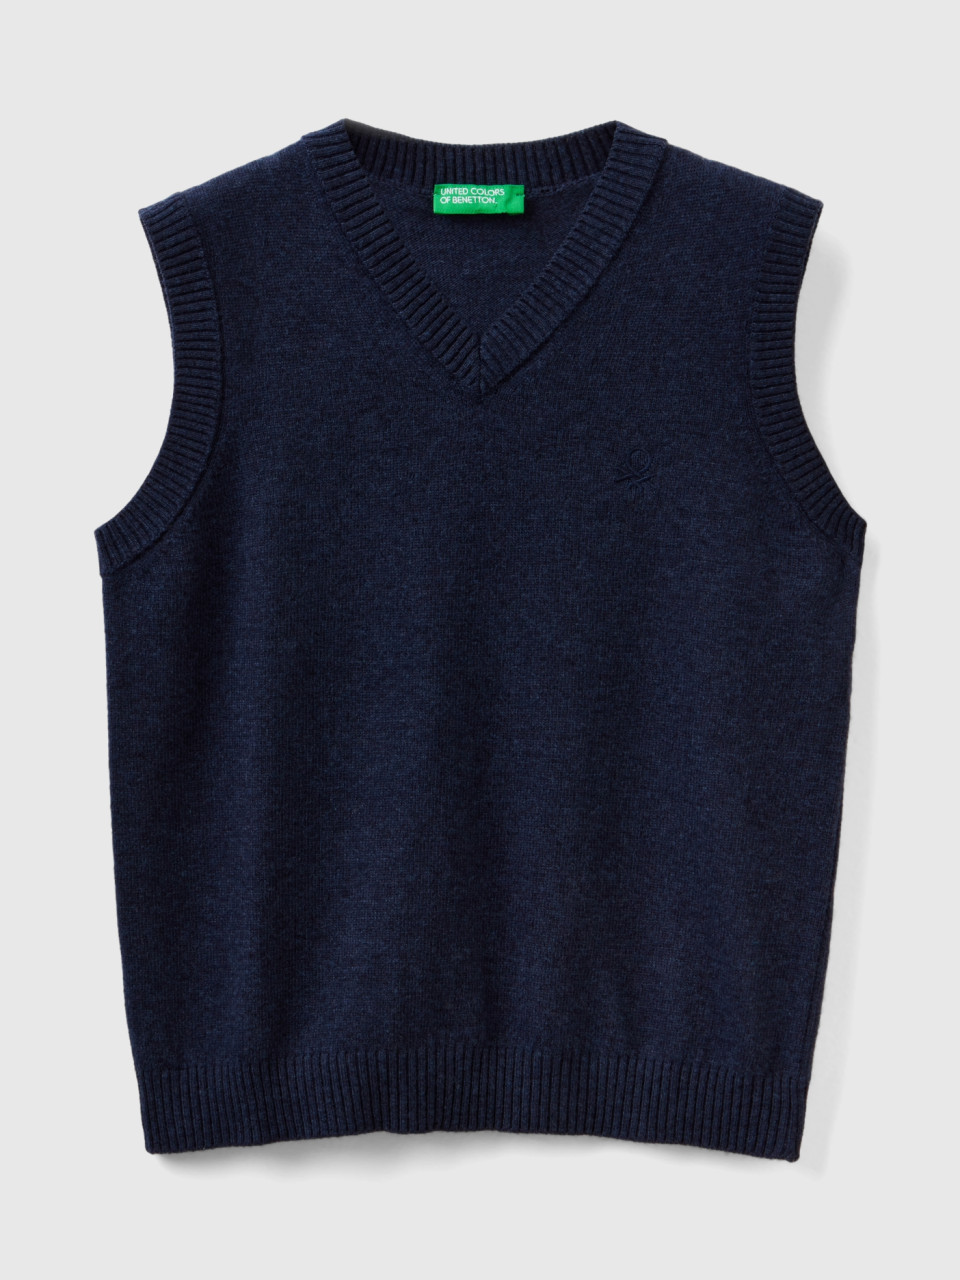 Benetton, Vest In Cashmere And Wool Blend, Dark Blue, Kids